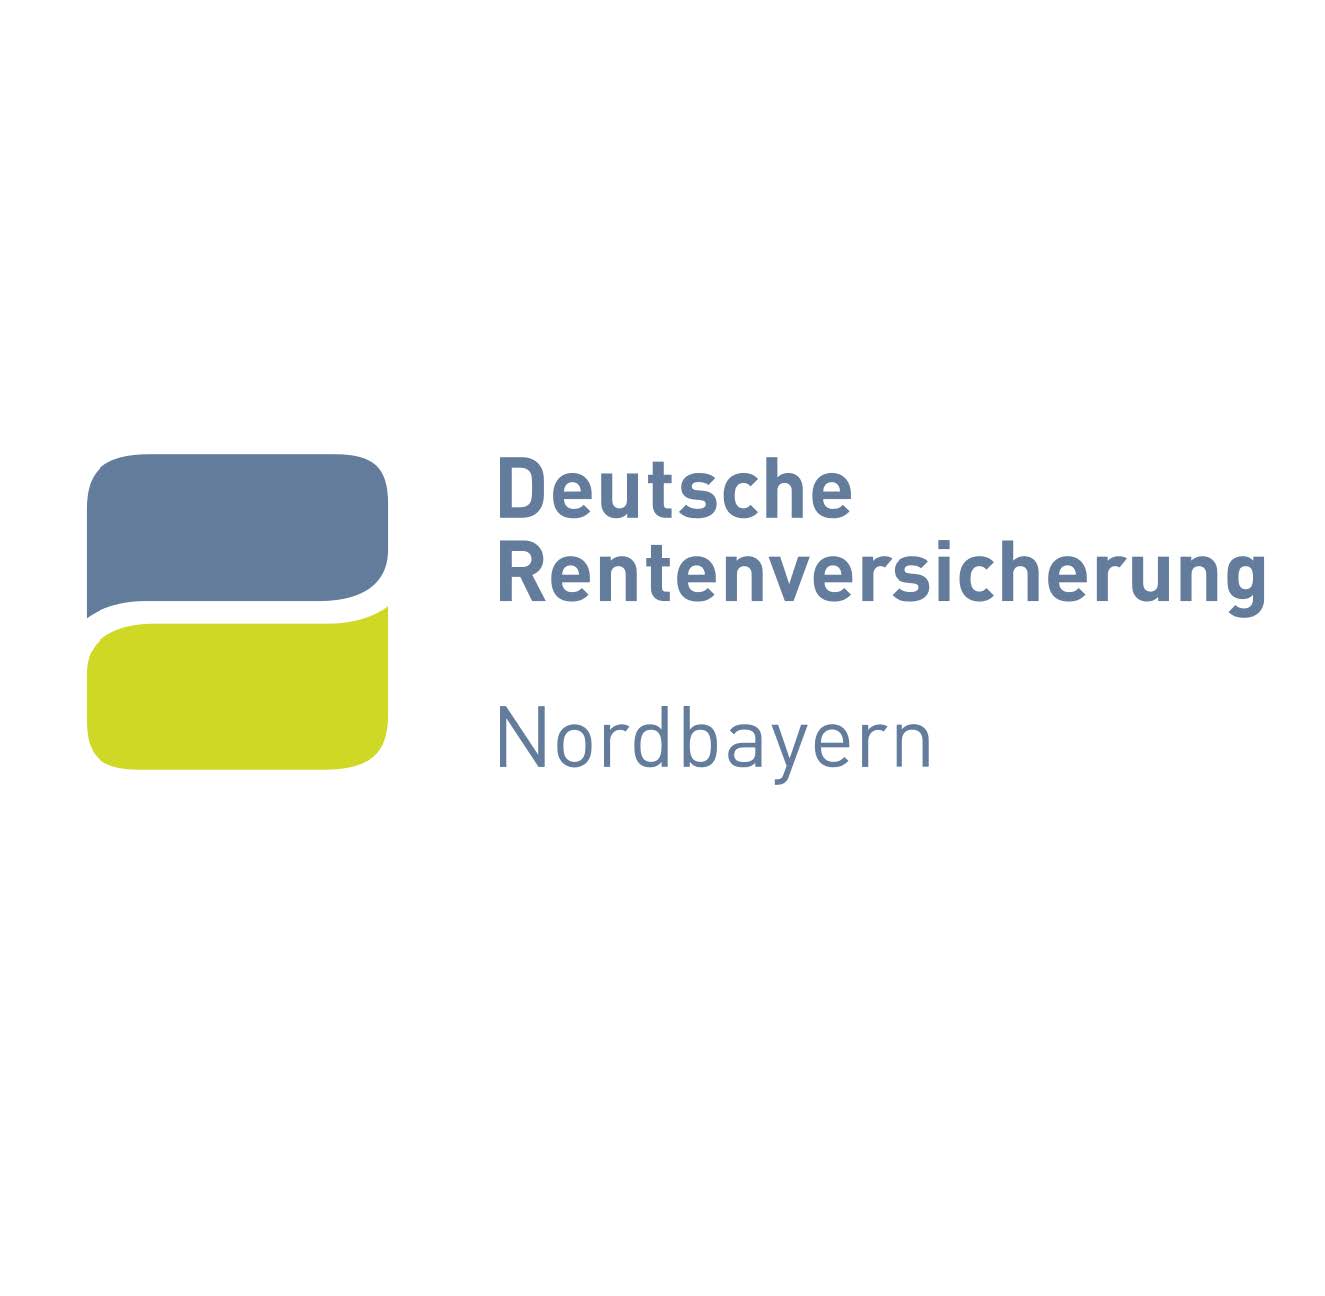 Außensprechtage der Deutschen Rentenversicherung